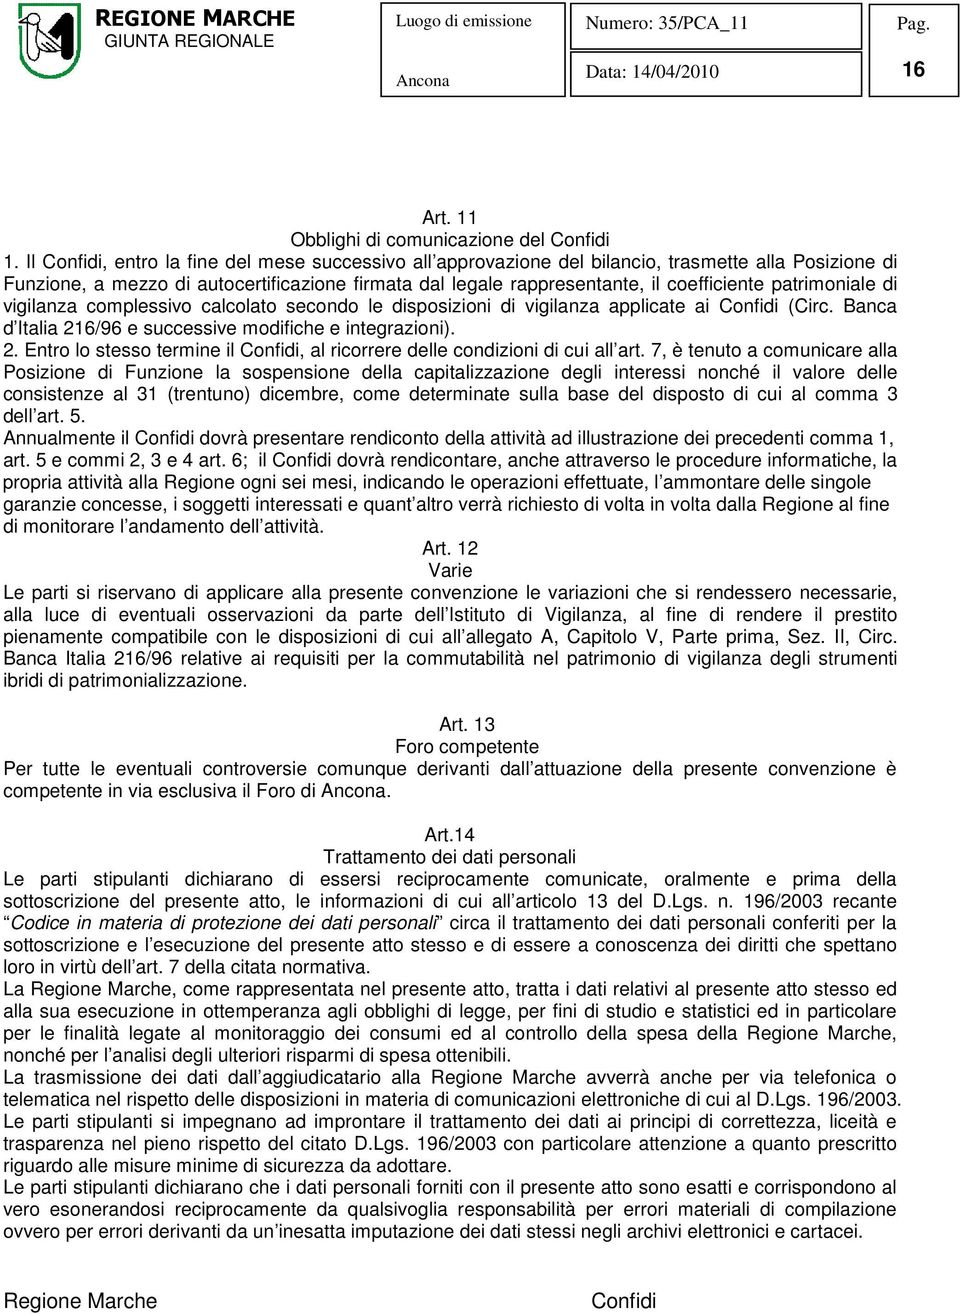 patrimoniale di vigilanza complessivo calcolato secondo le disposizioni di vigilanza applicate ai Confidi (Circ. Banca d Italia 21